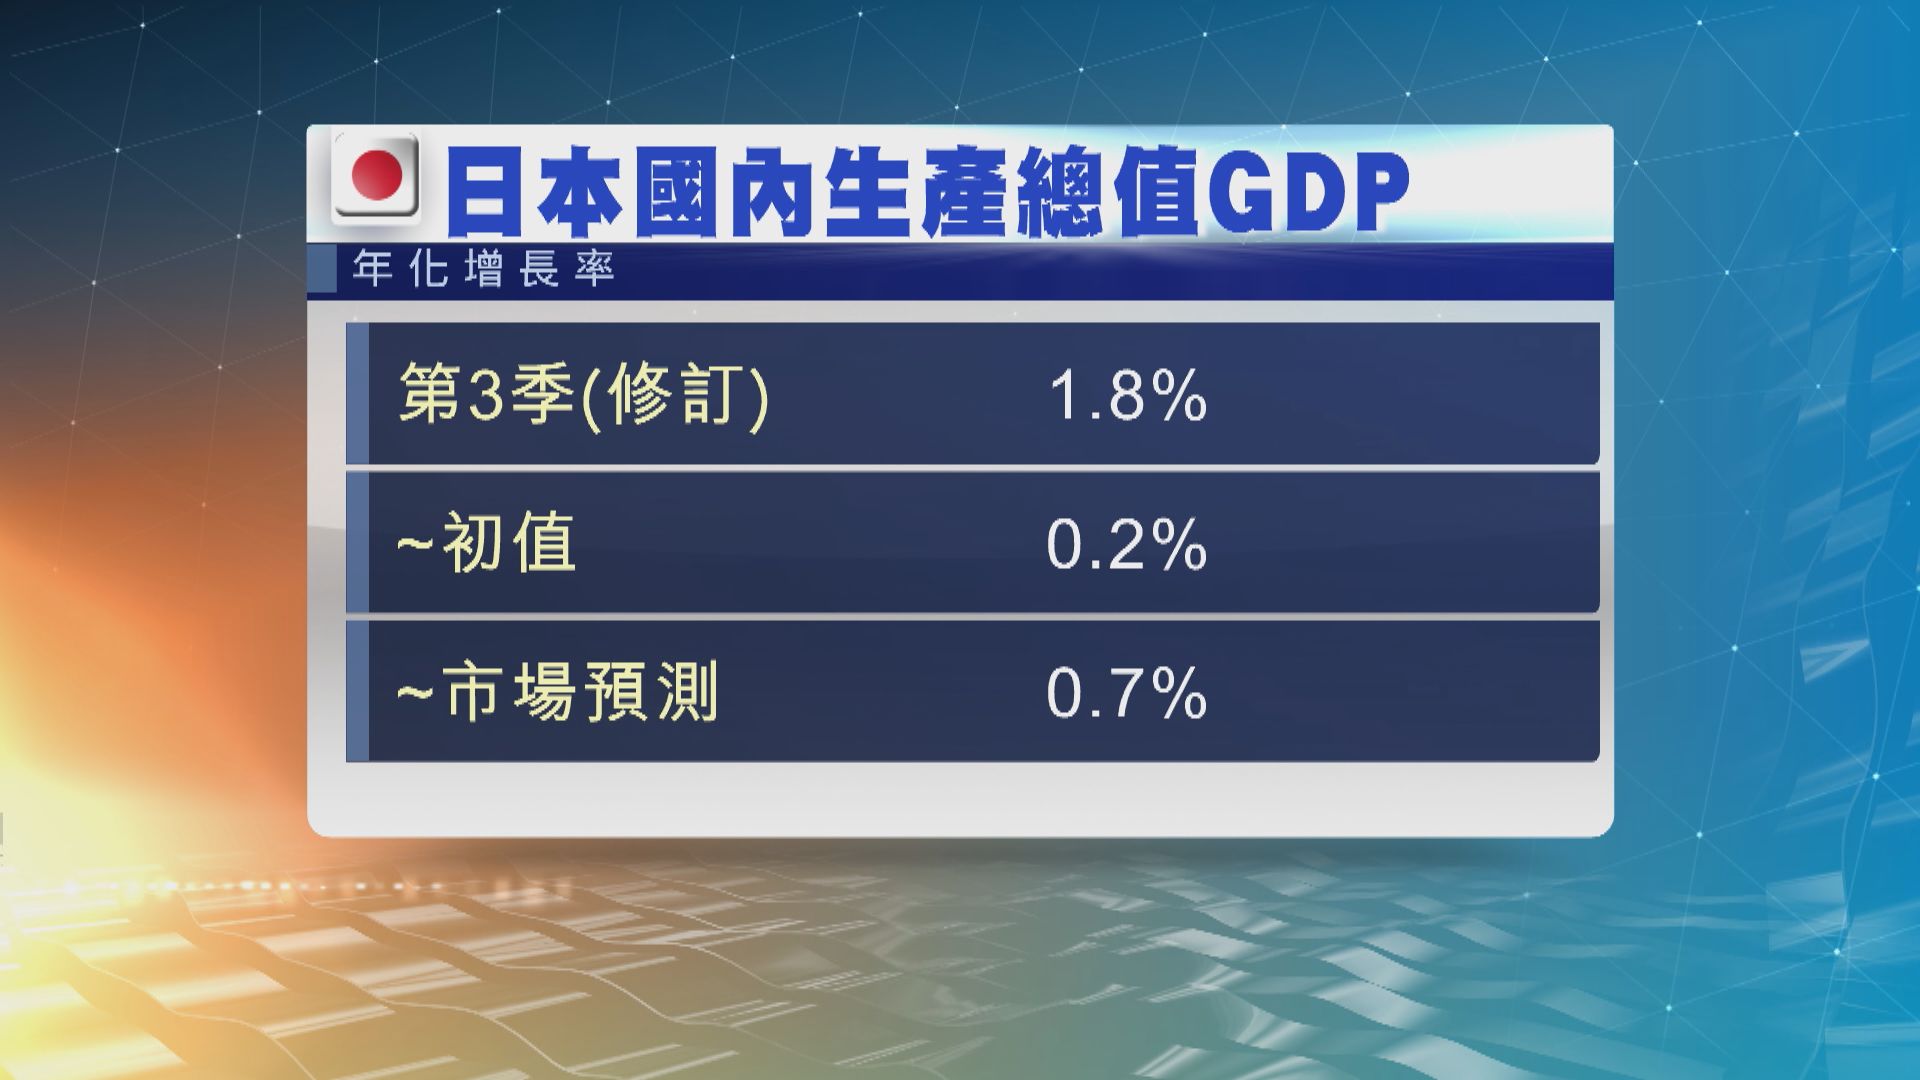 日本第3季經濟大幅向上修訂至到增長1.8%